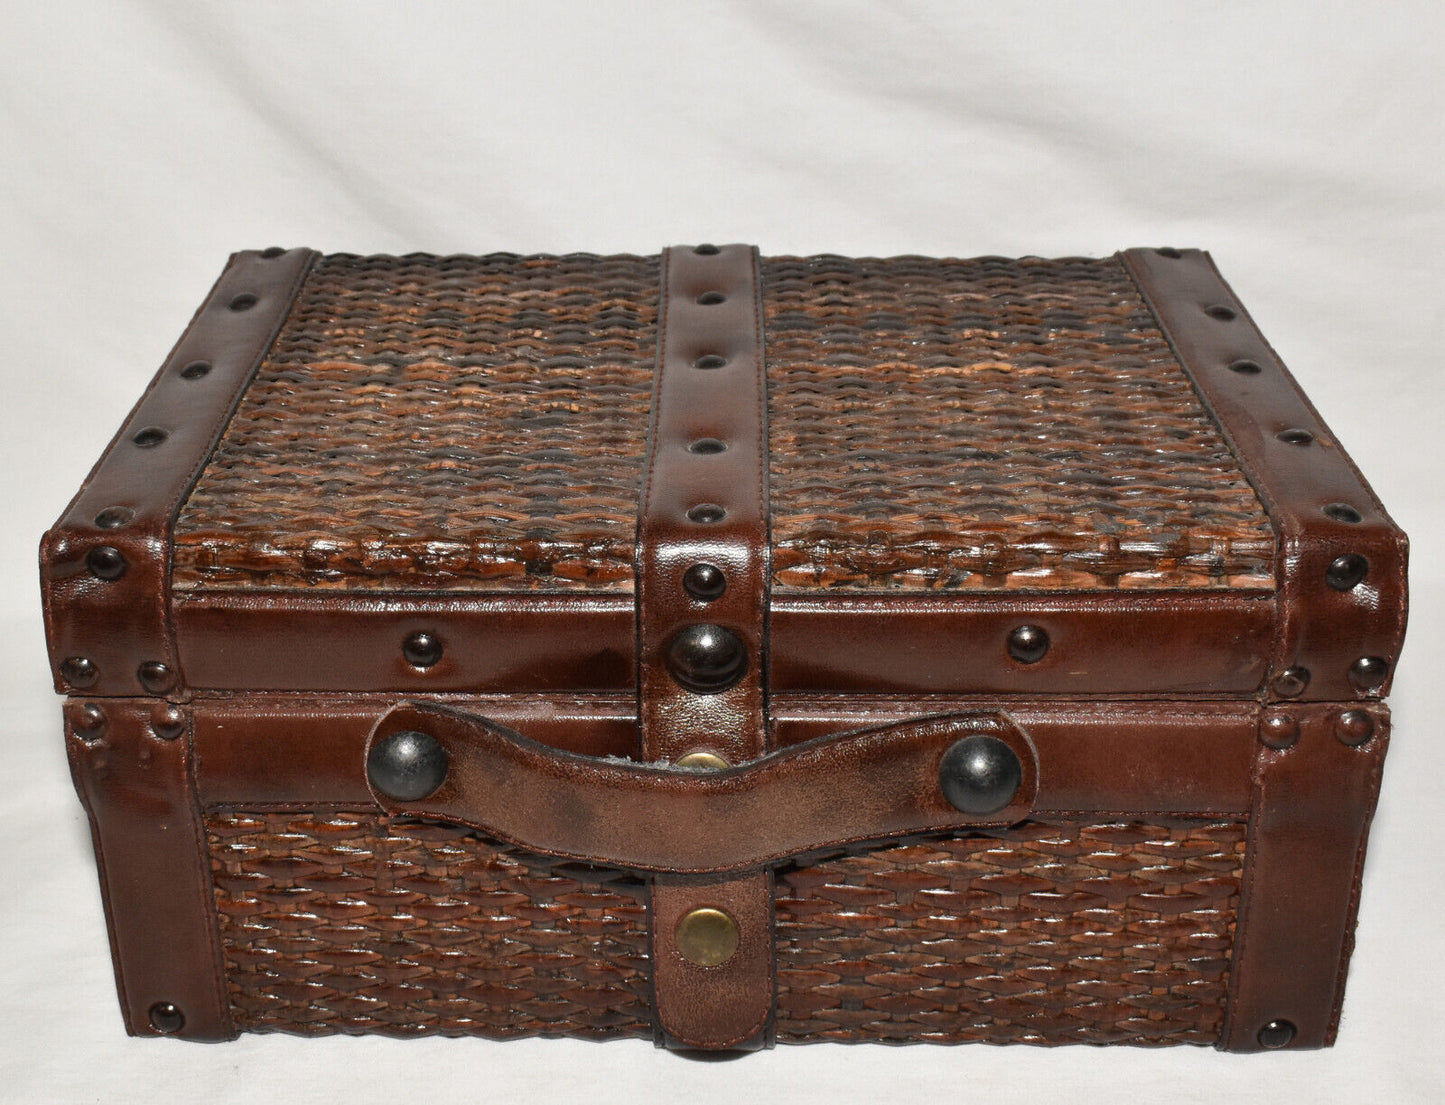 Vintage Leather Wicker Storage Trunk Brown 12" x 8" Storage Case w Snap Closure